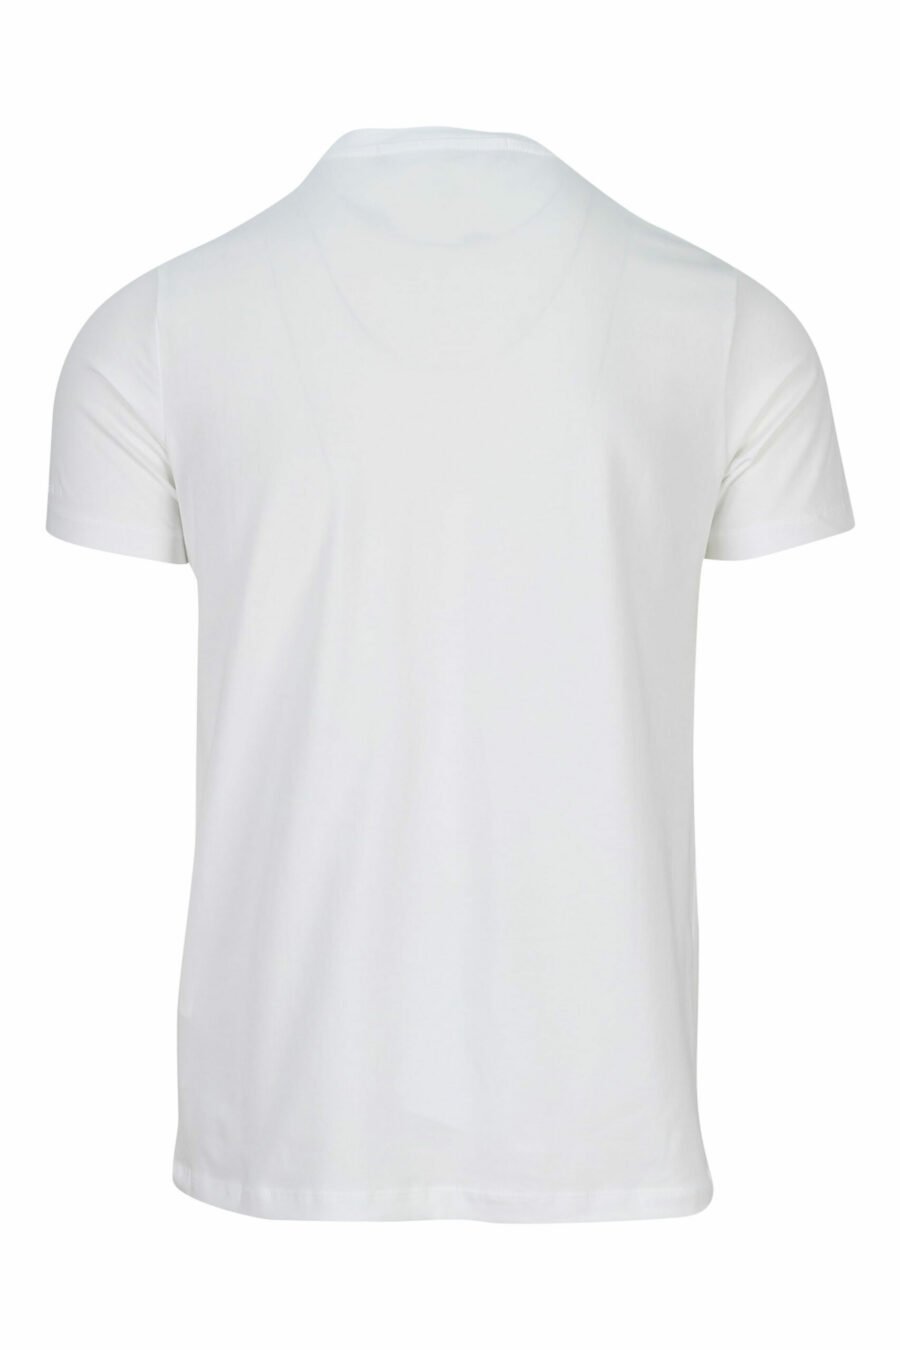 T-shirt branca com maxilogo monocromático em borracha - 4062226401180 1 scaled